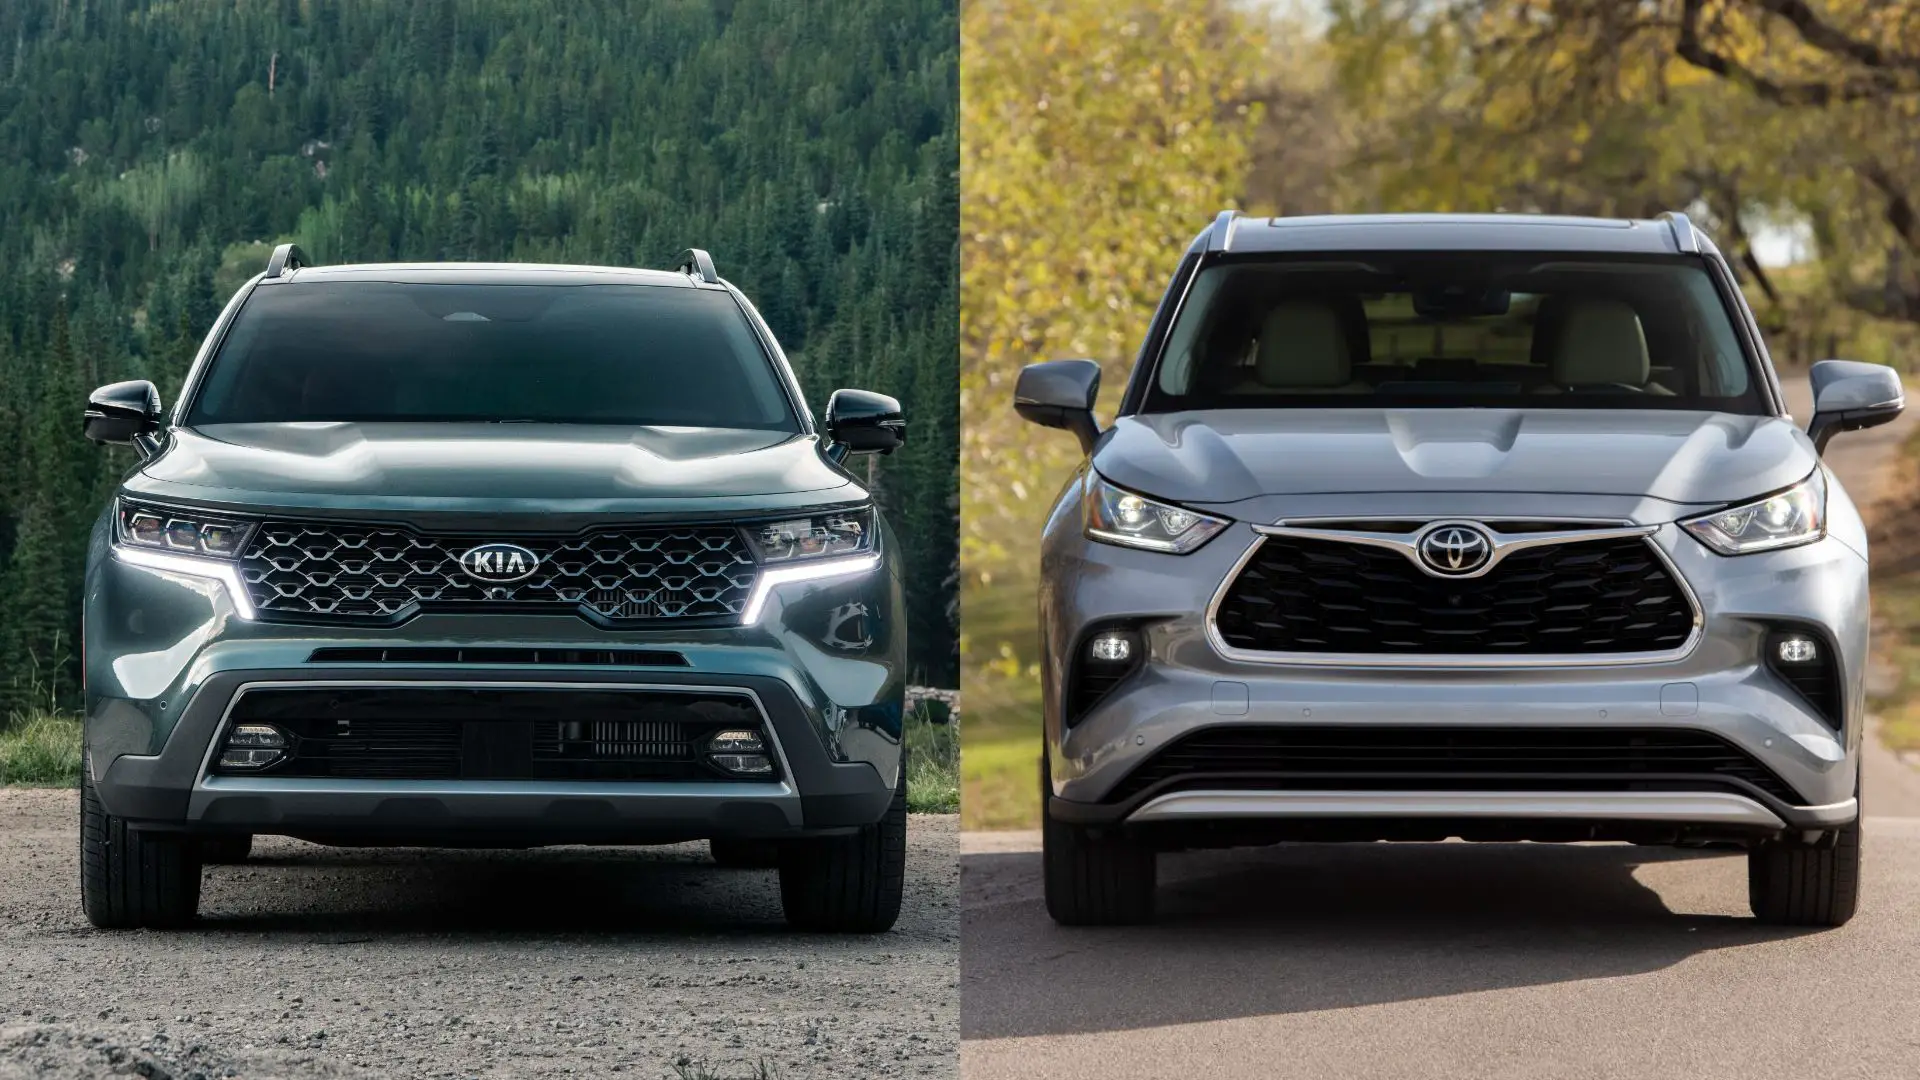 Kia Sorento vs Toyota Highlander comparison